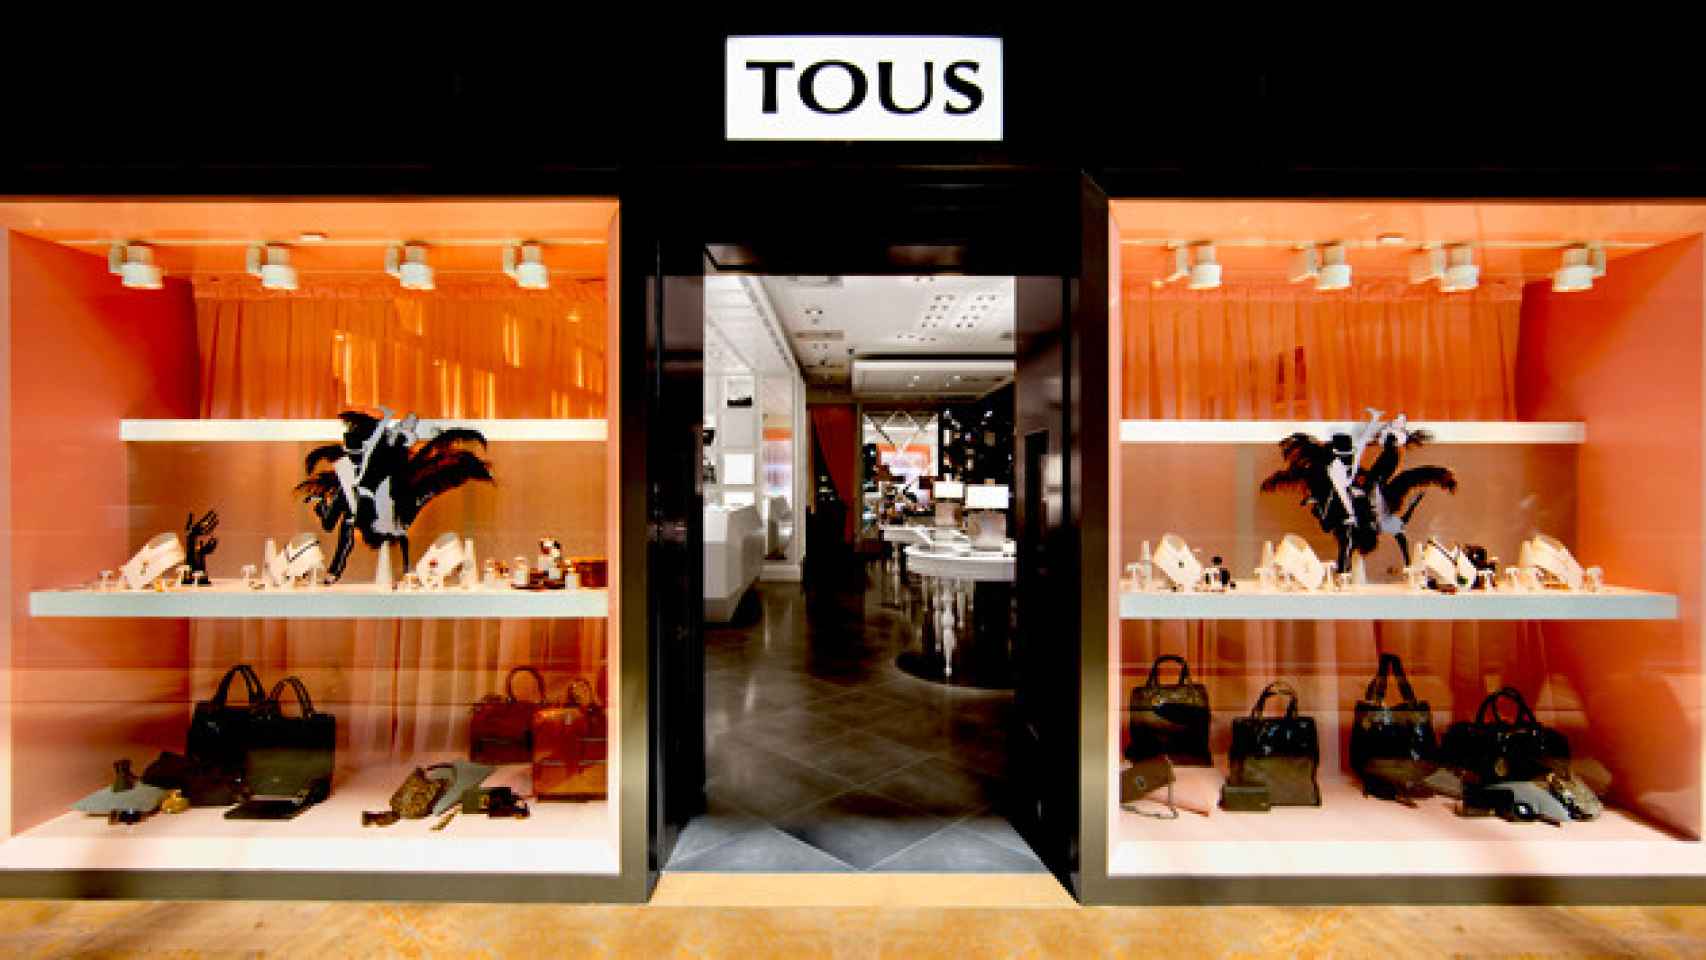 Una de las tiendas Tous, en Barcelona, ubicada en un centro comercial / EFE